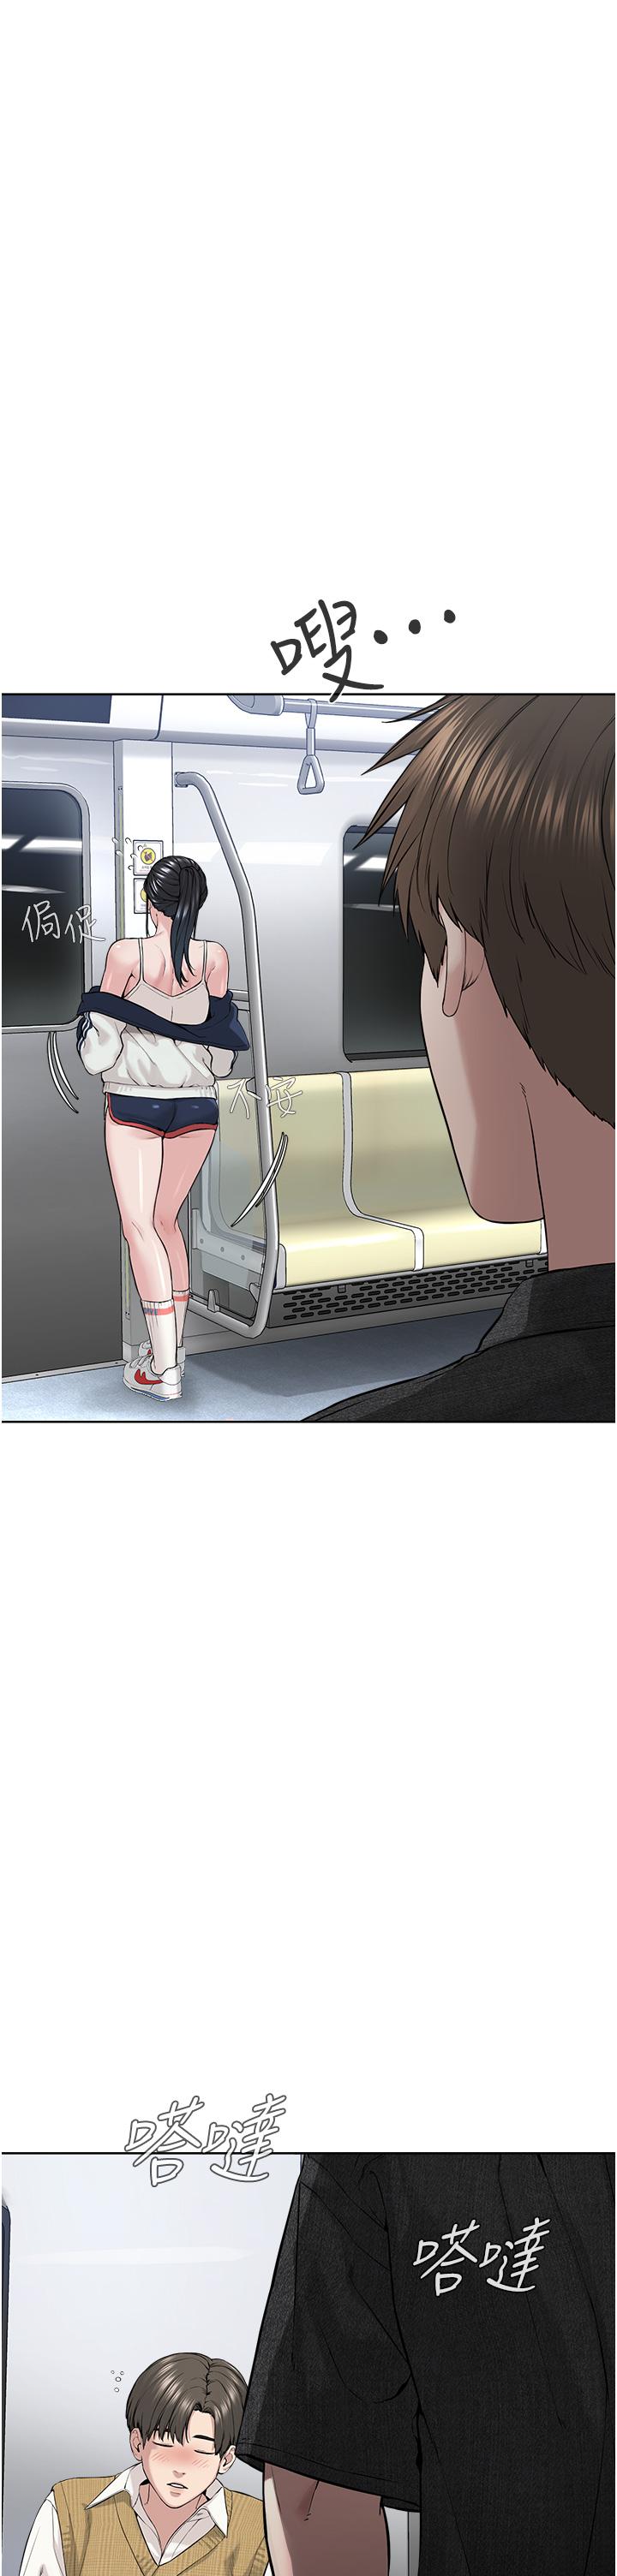 韩国污漫画 邪教教主 第7话-在地铁上演的羞耻剧 46